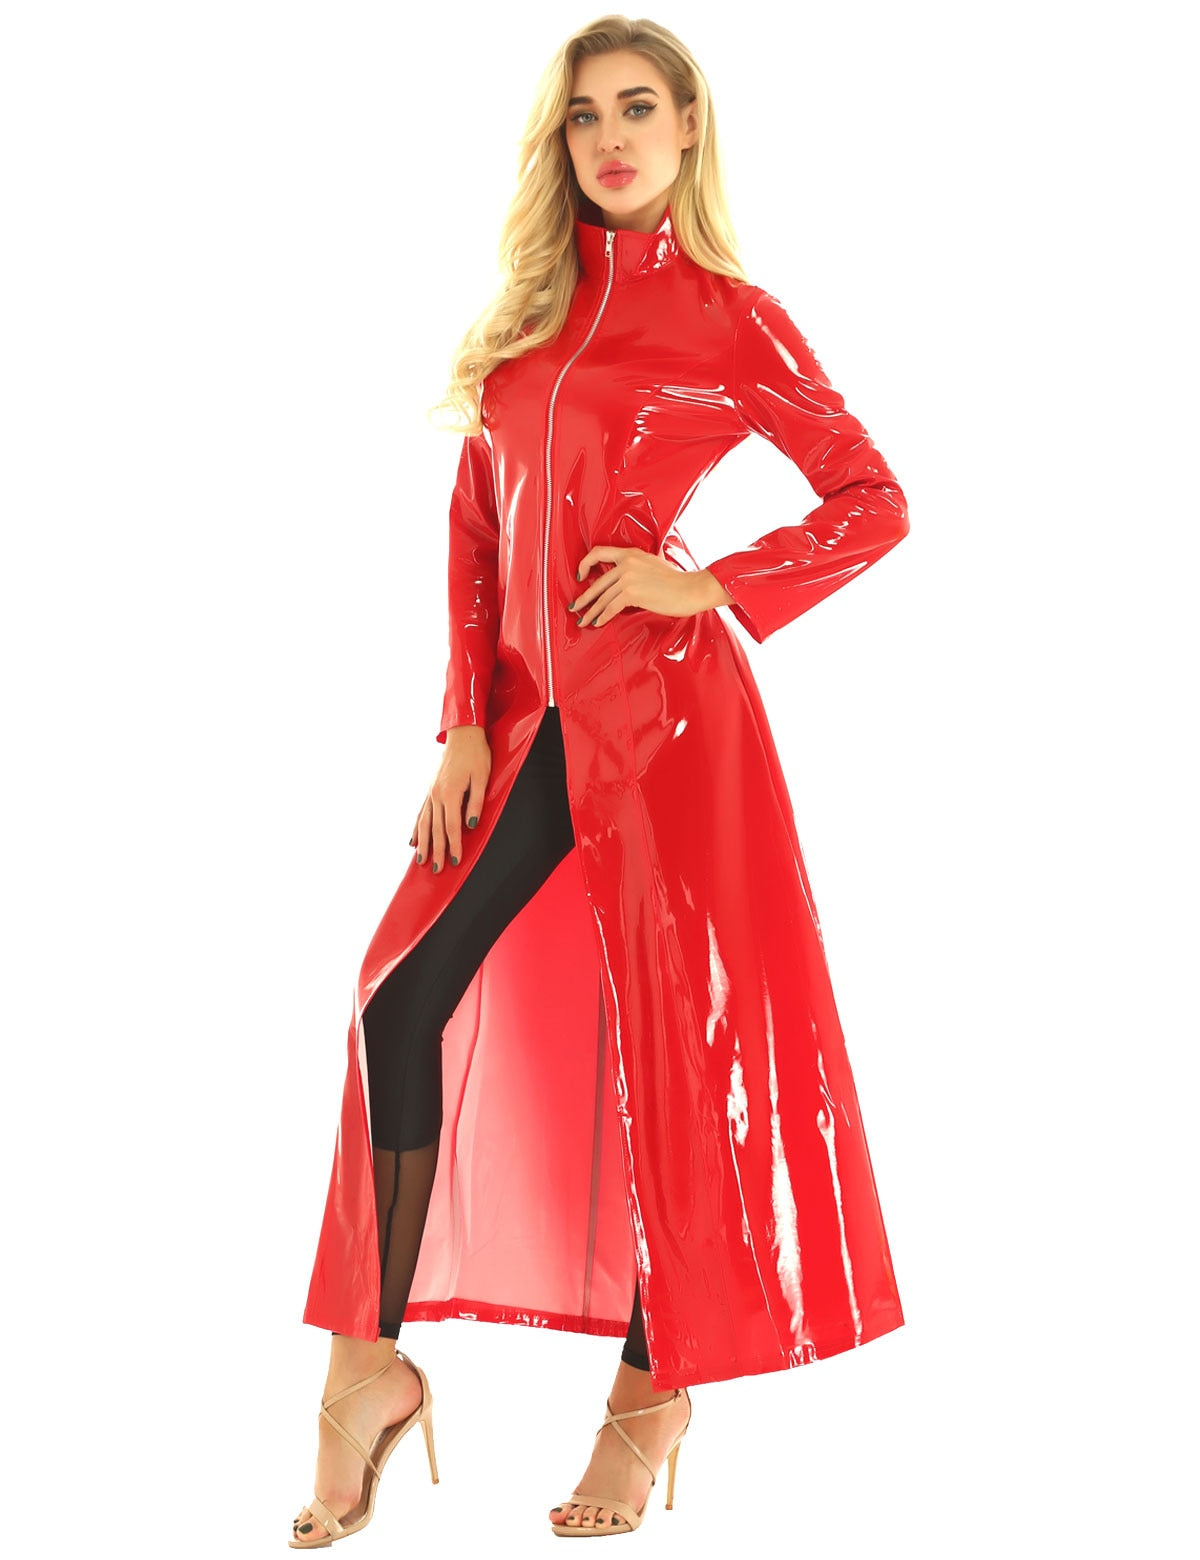 Red / S Women's Wet look Long Leather Dress - skyjackerz